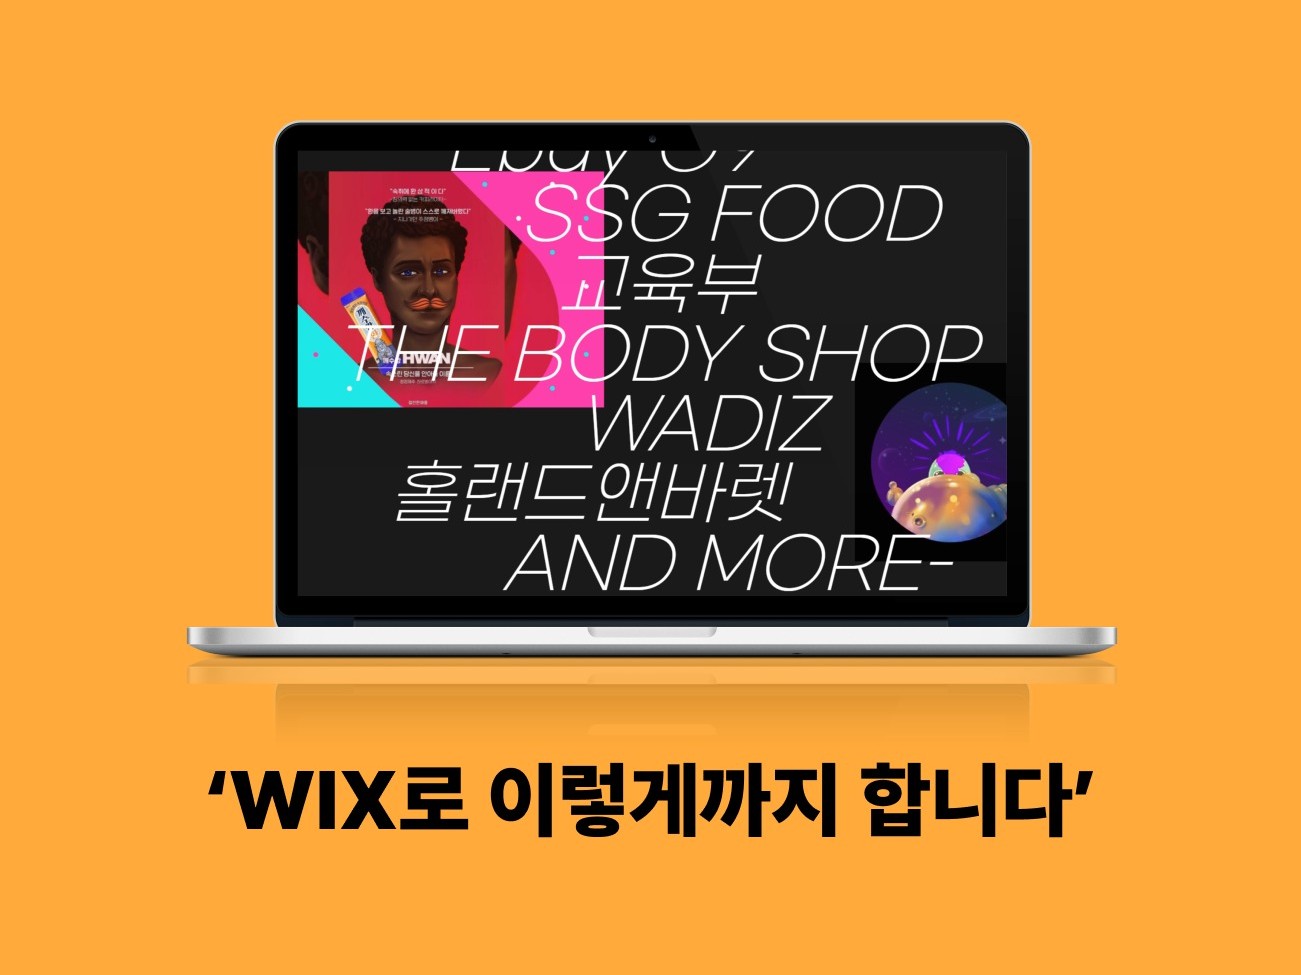 WIX 조지아텍 개발자와 브랜드 마케터의 홈페이지를 드립니다.